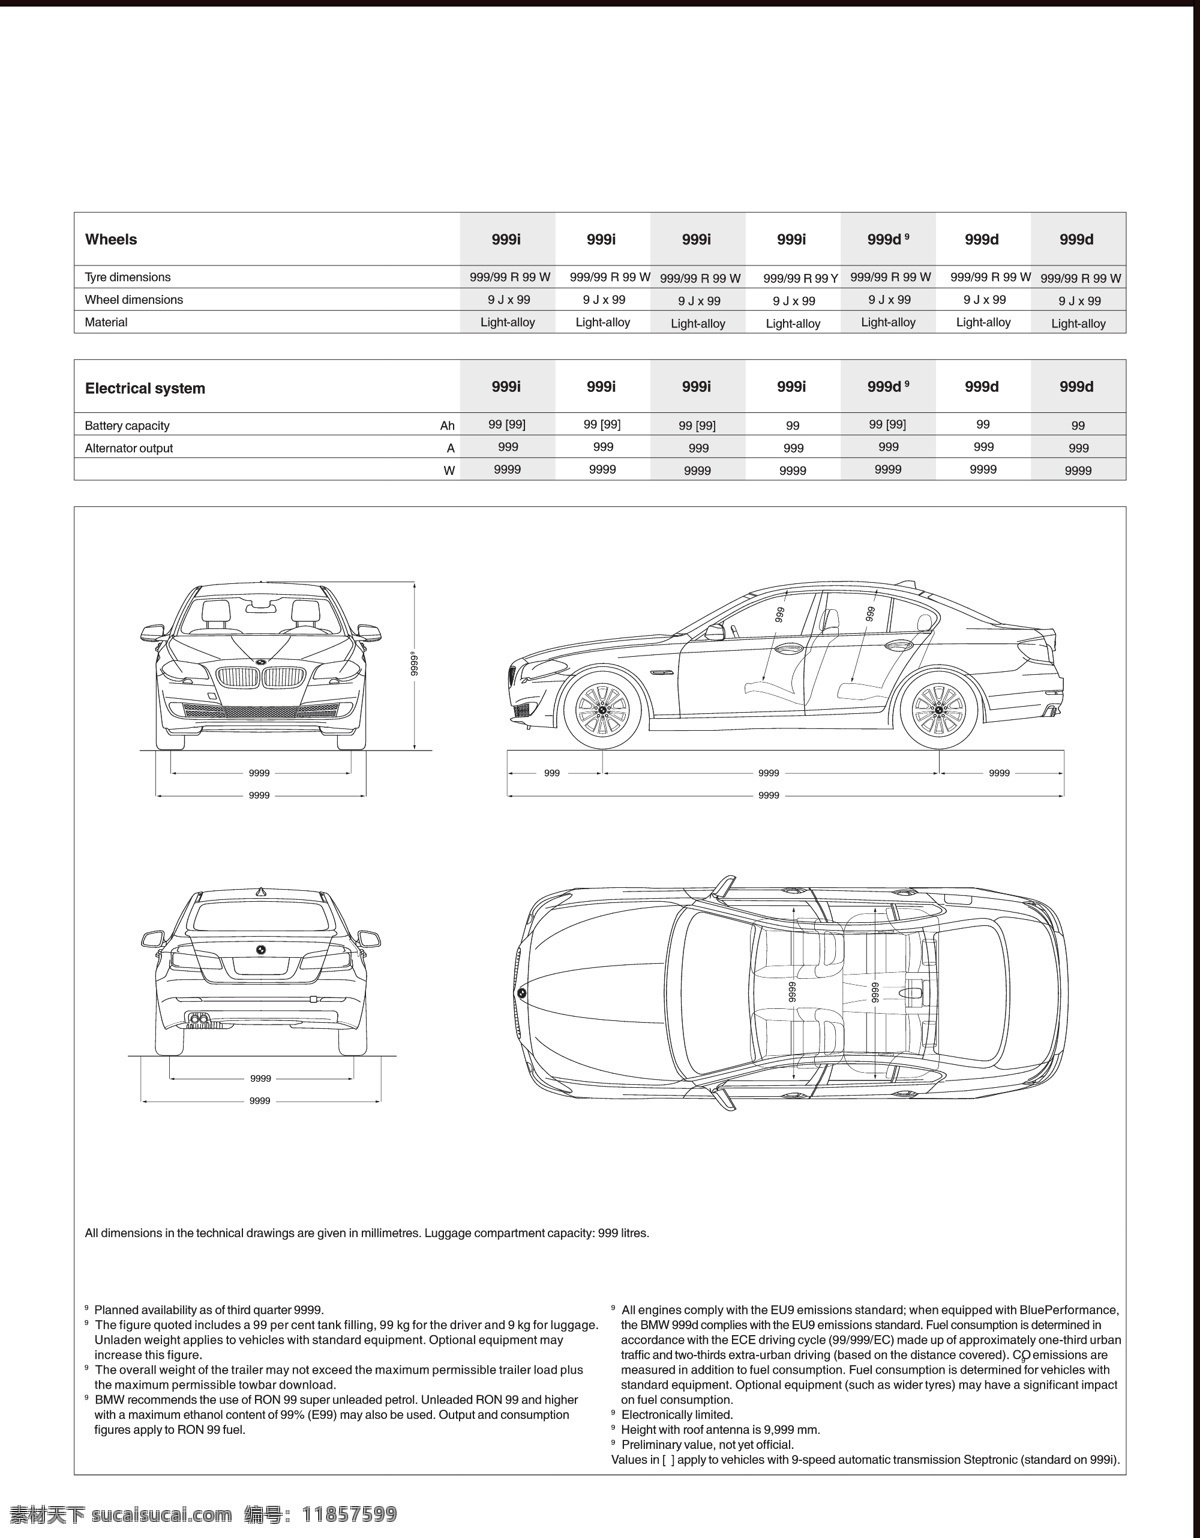 汽车创意画册 车画册设计 创意画册 广告画册 企业画册 画册 画册设计